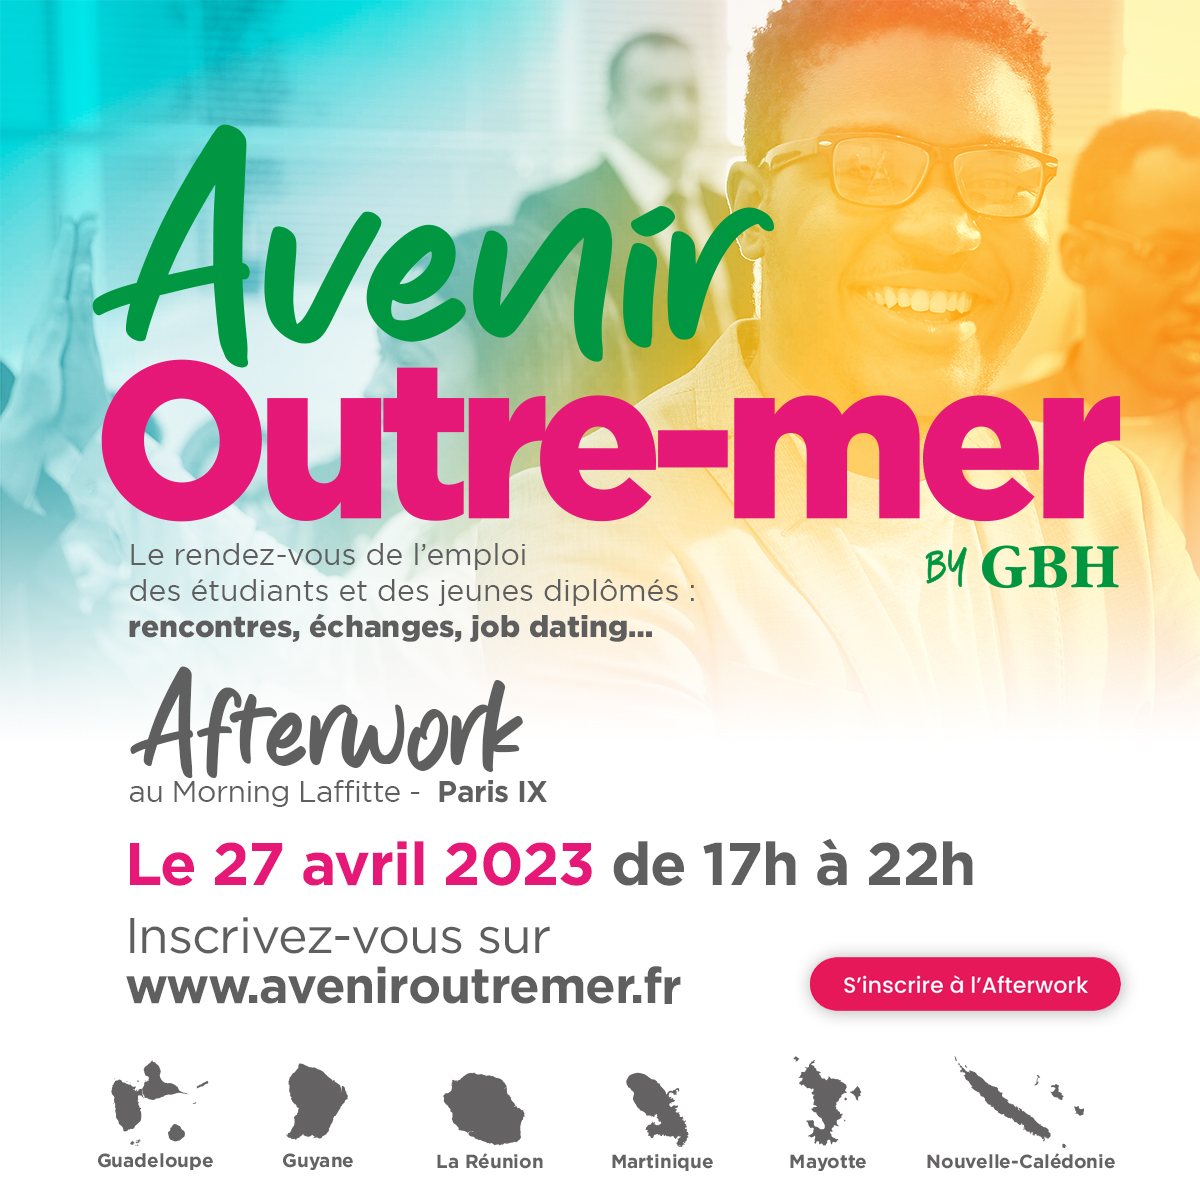 Affiche de promotion de l’Afterwork de la campagne avenir Outre-mer by GBH 